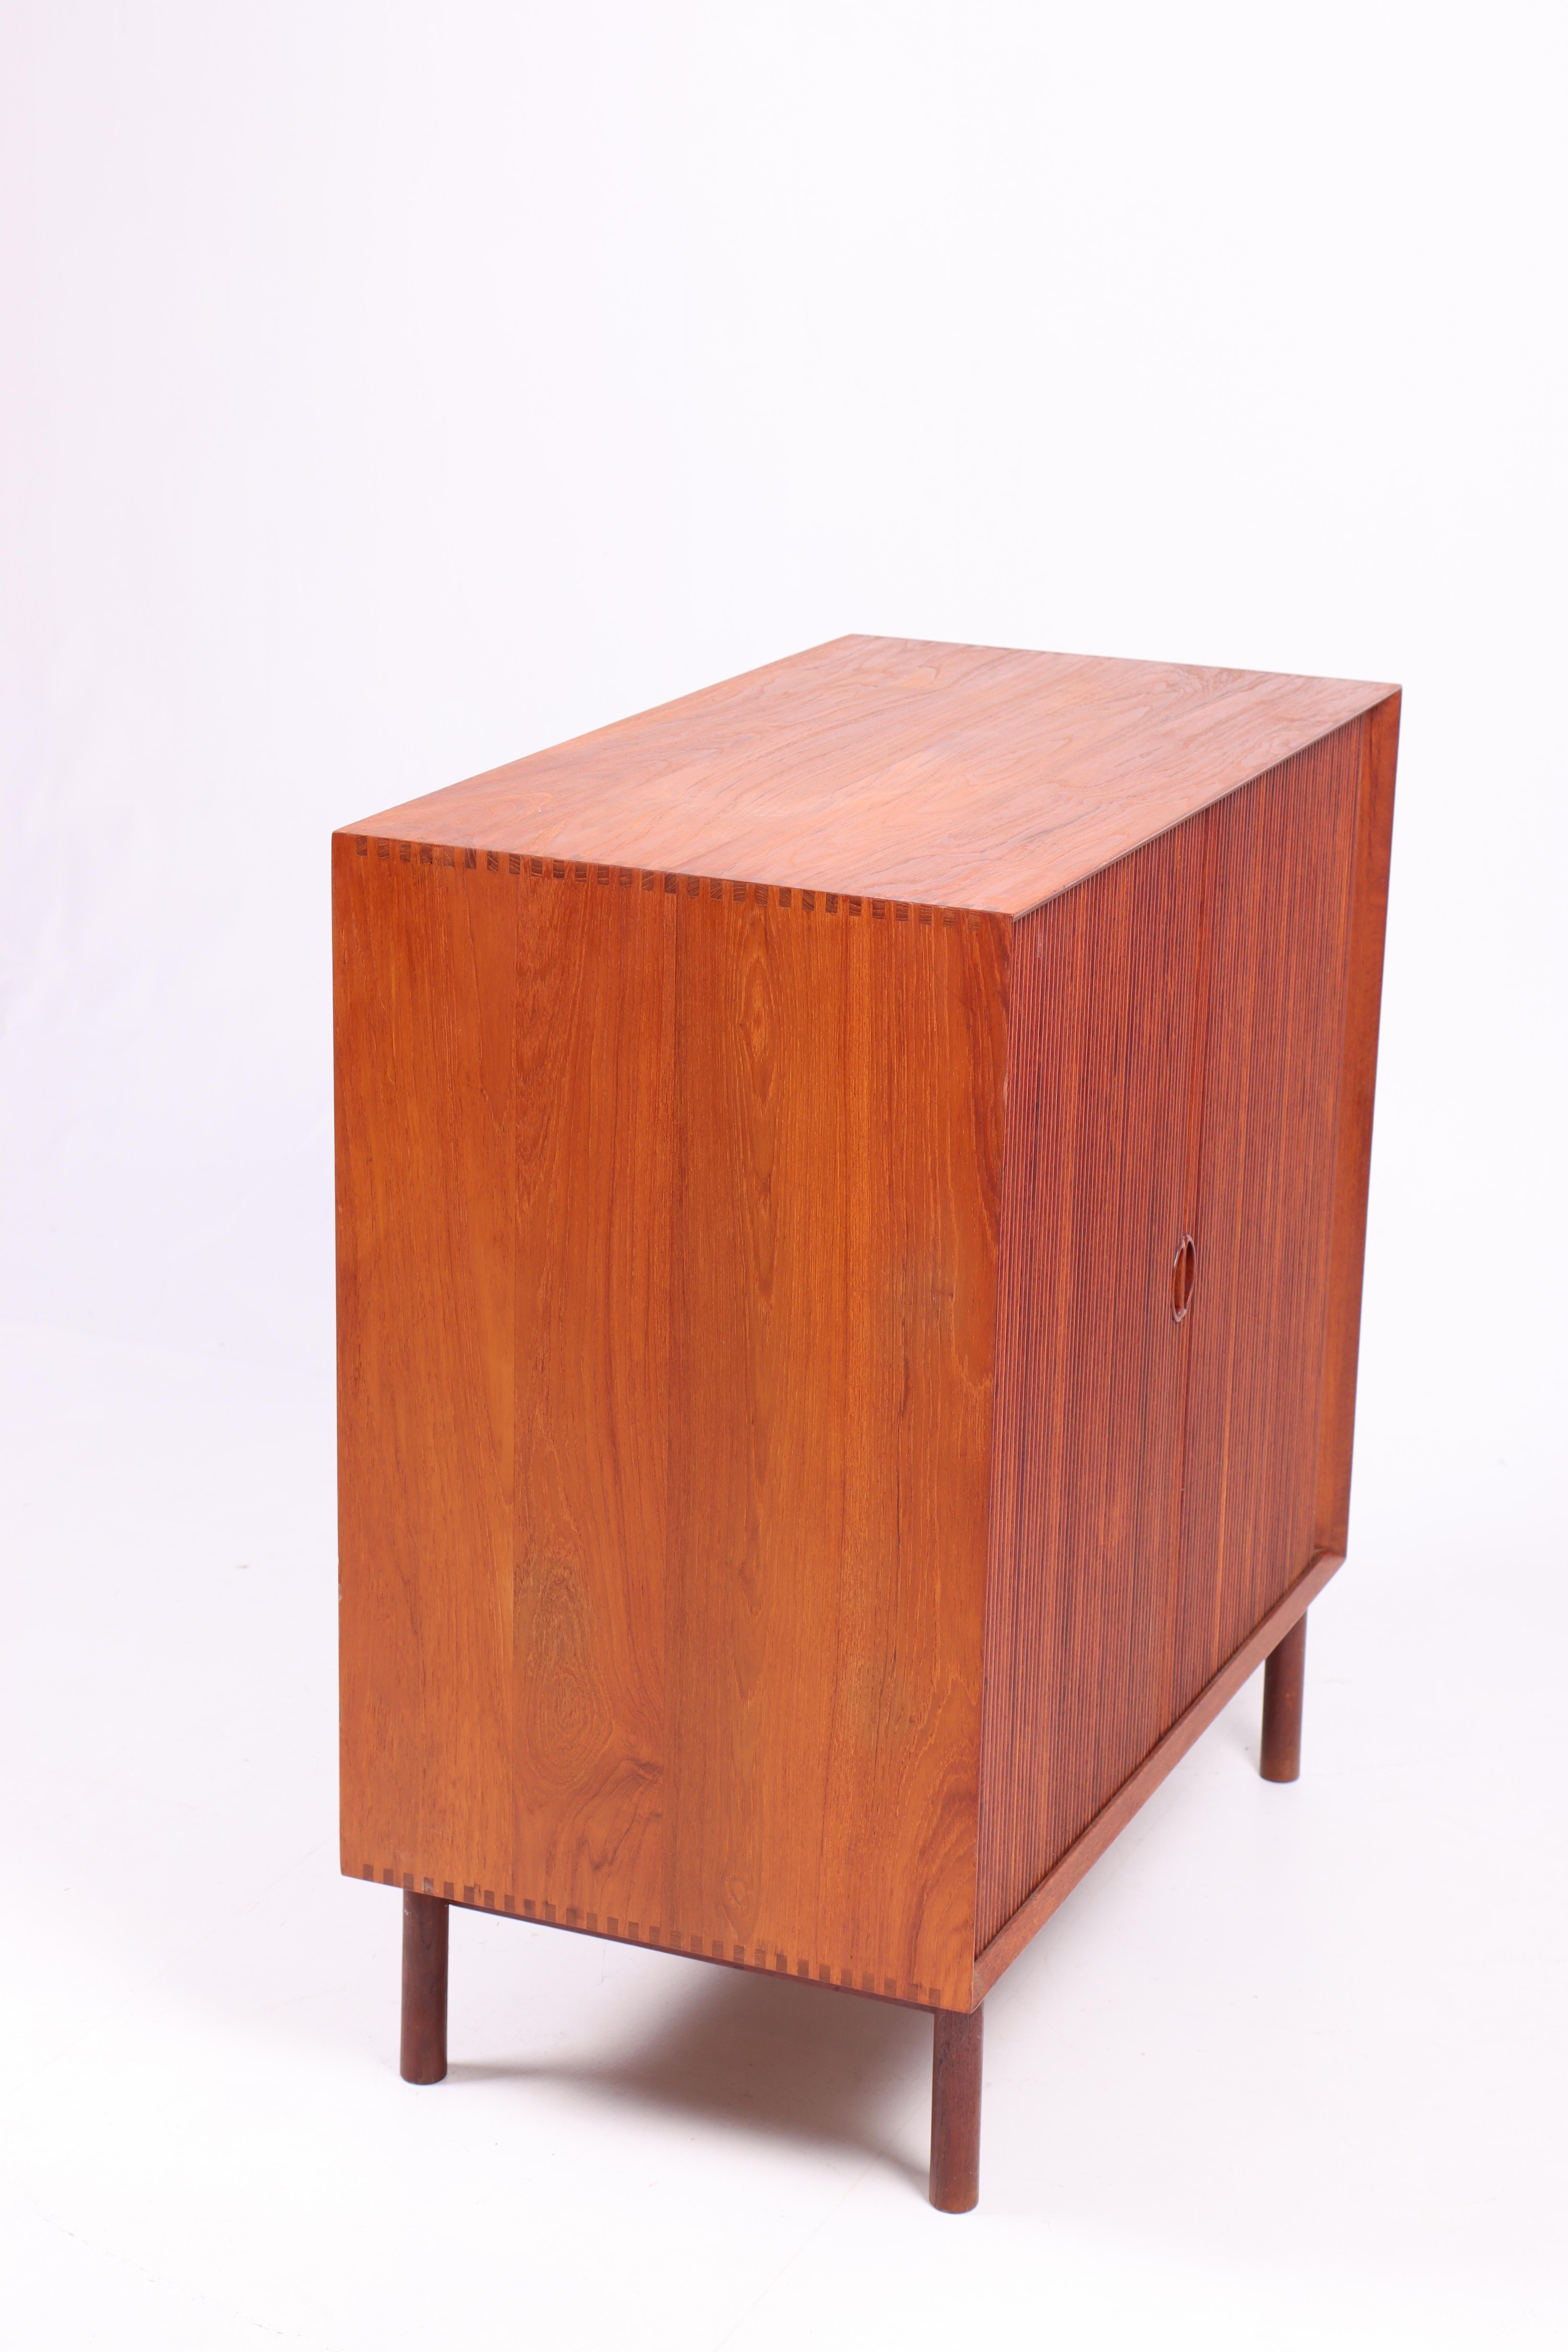 Midcentury Cabinet in Solid Teak Designed by Hvidt & Mølgaard, 1950s For Sale 3